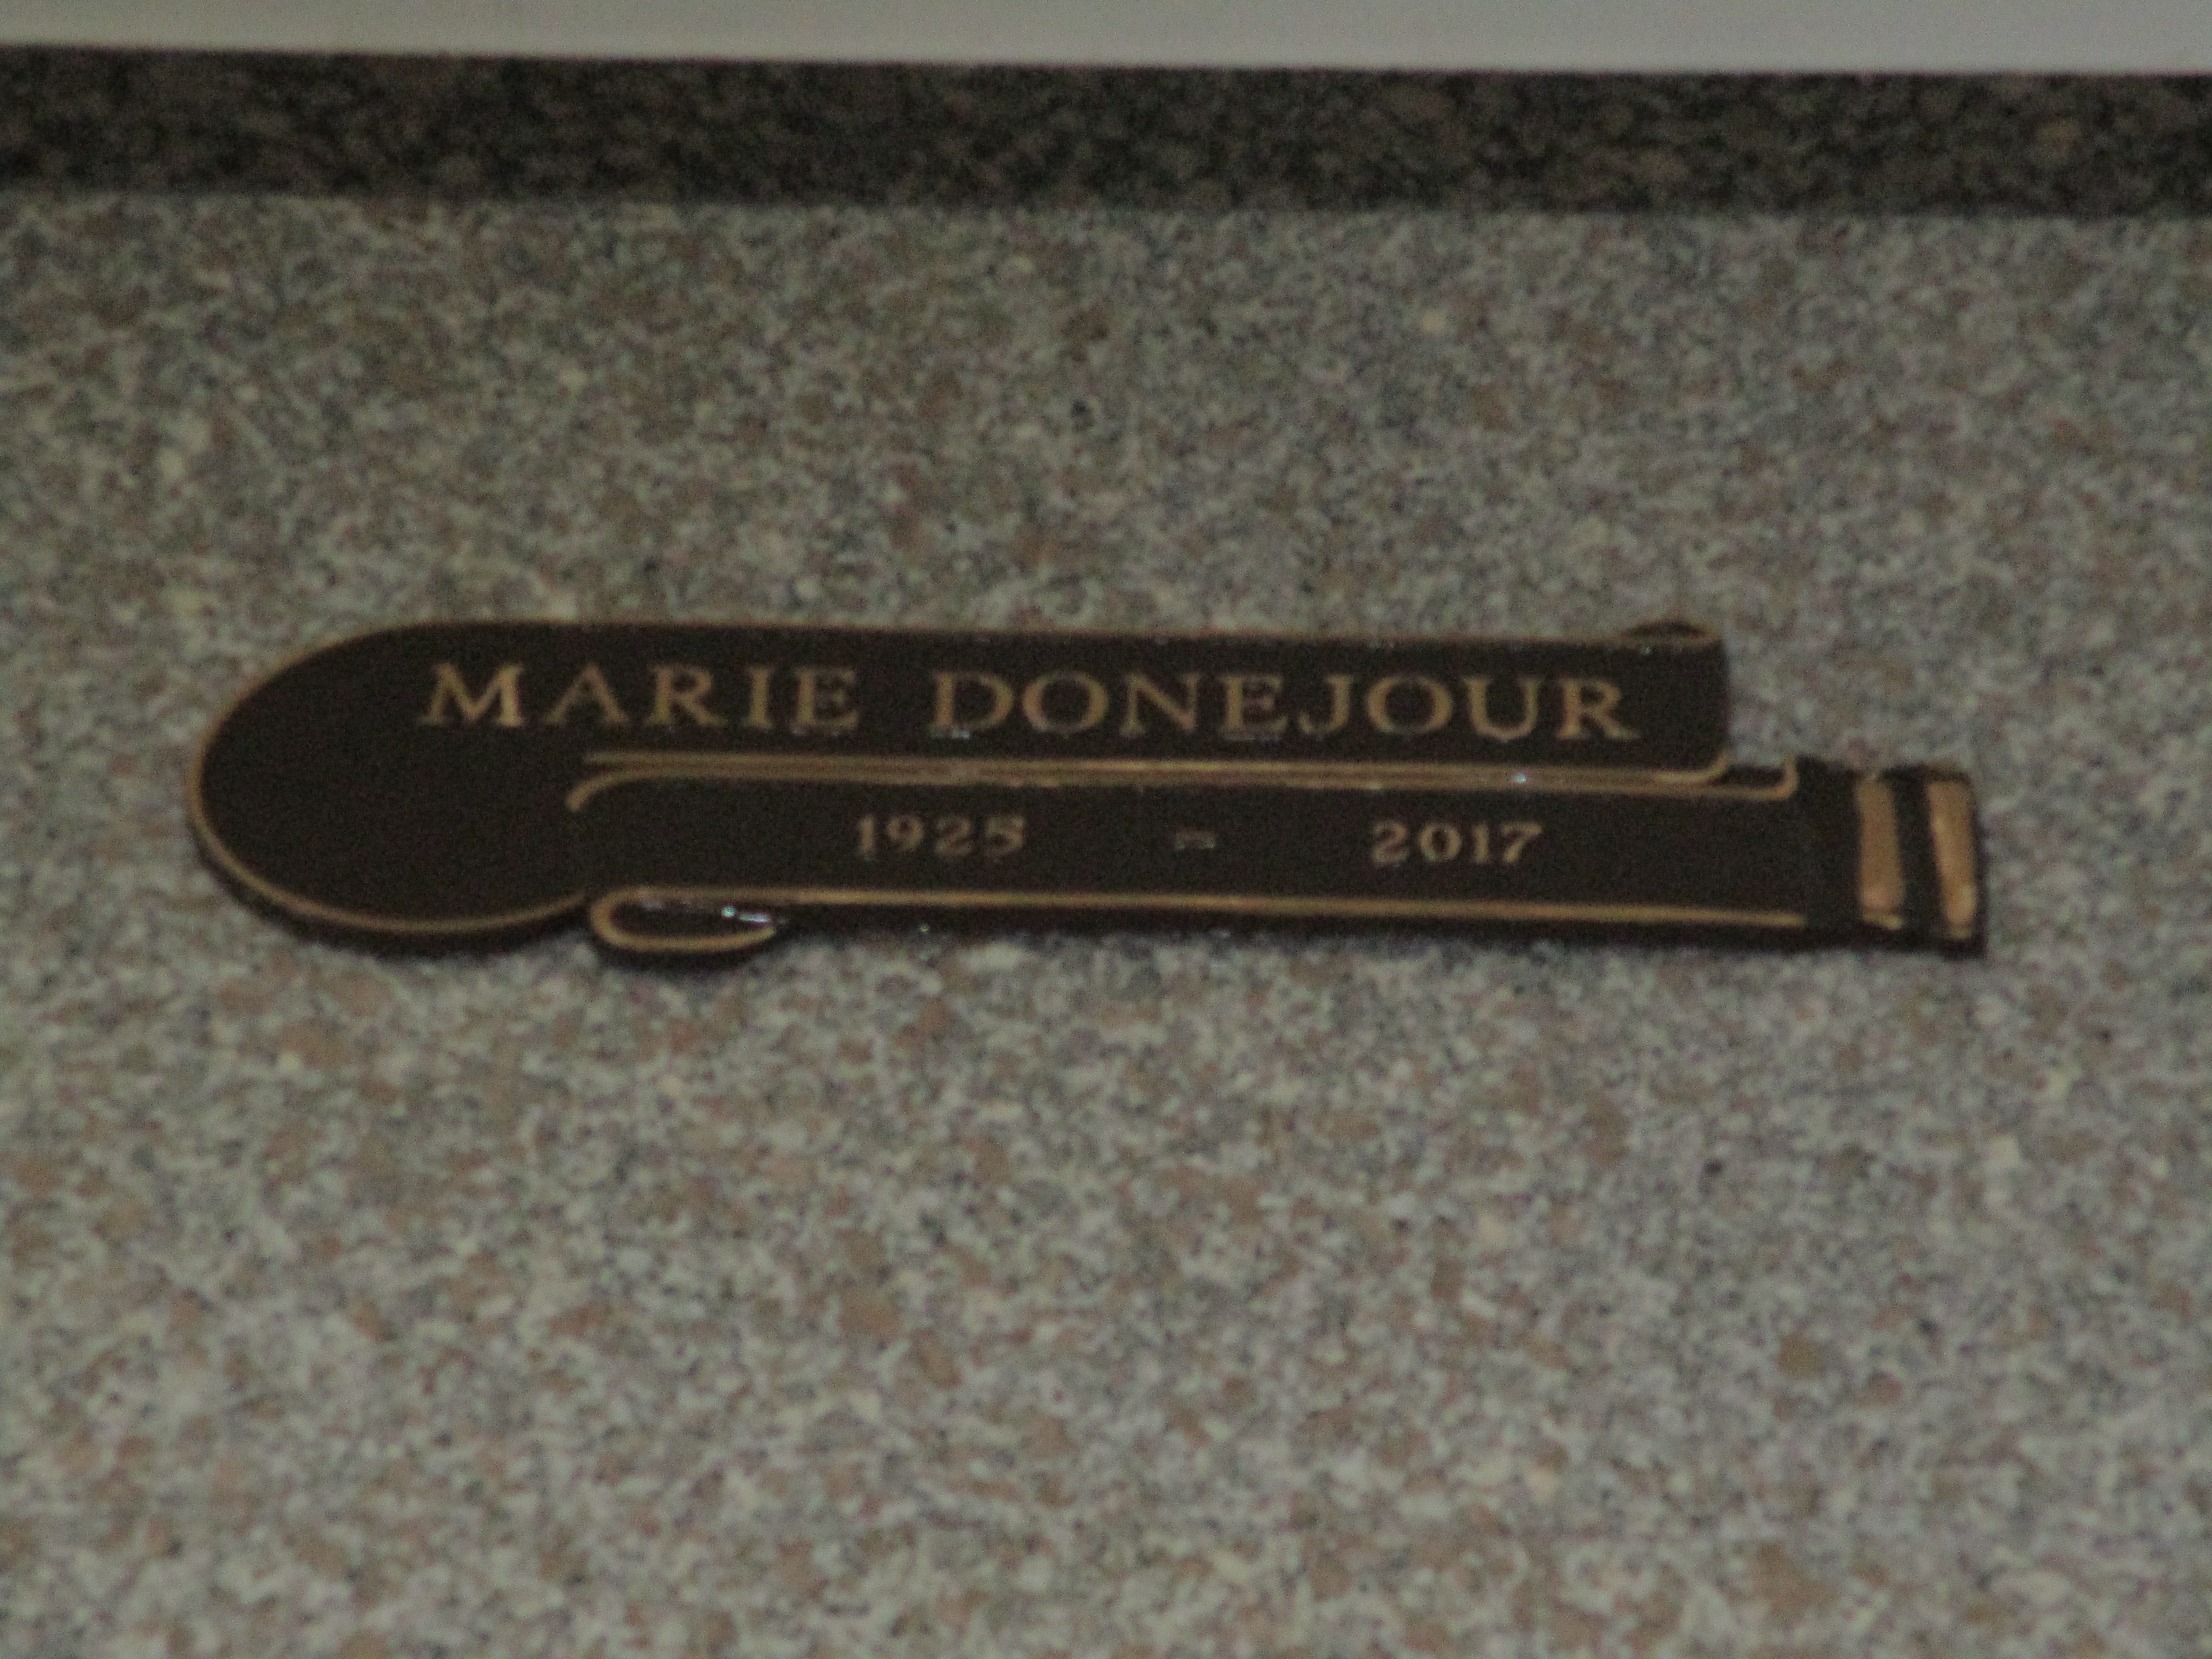 Marie Donejour